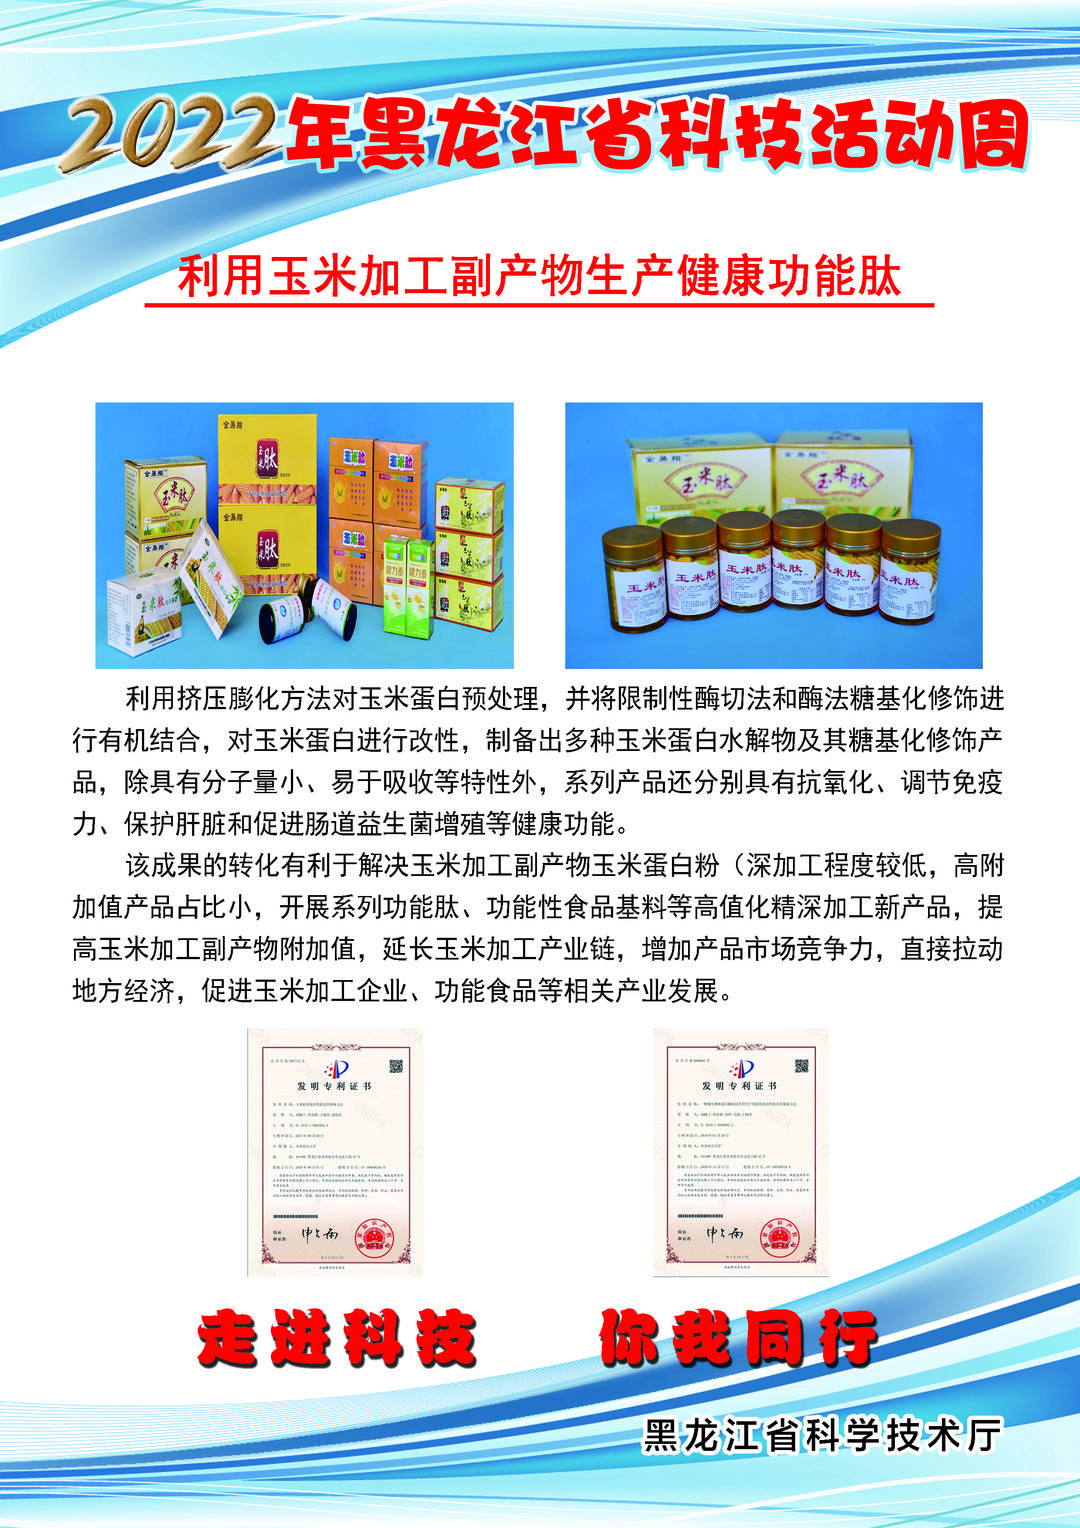 黑龙江省科技创新成果展丨利用玉米加工副产物生产健康功能肽